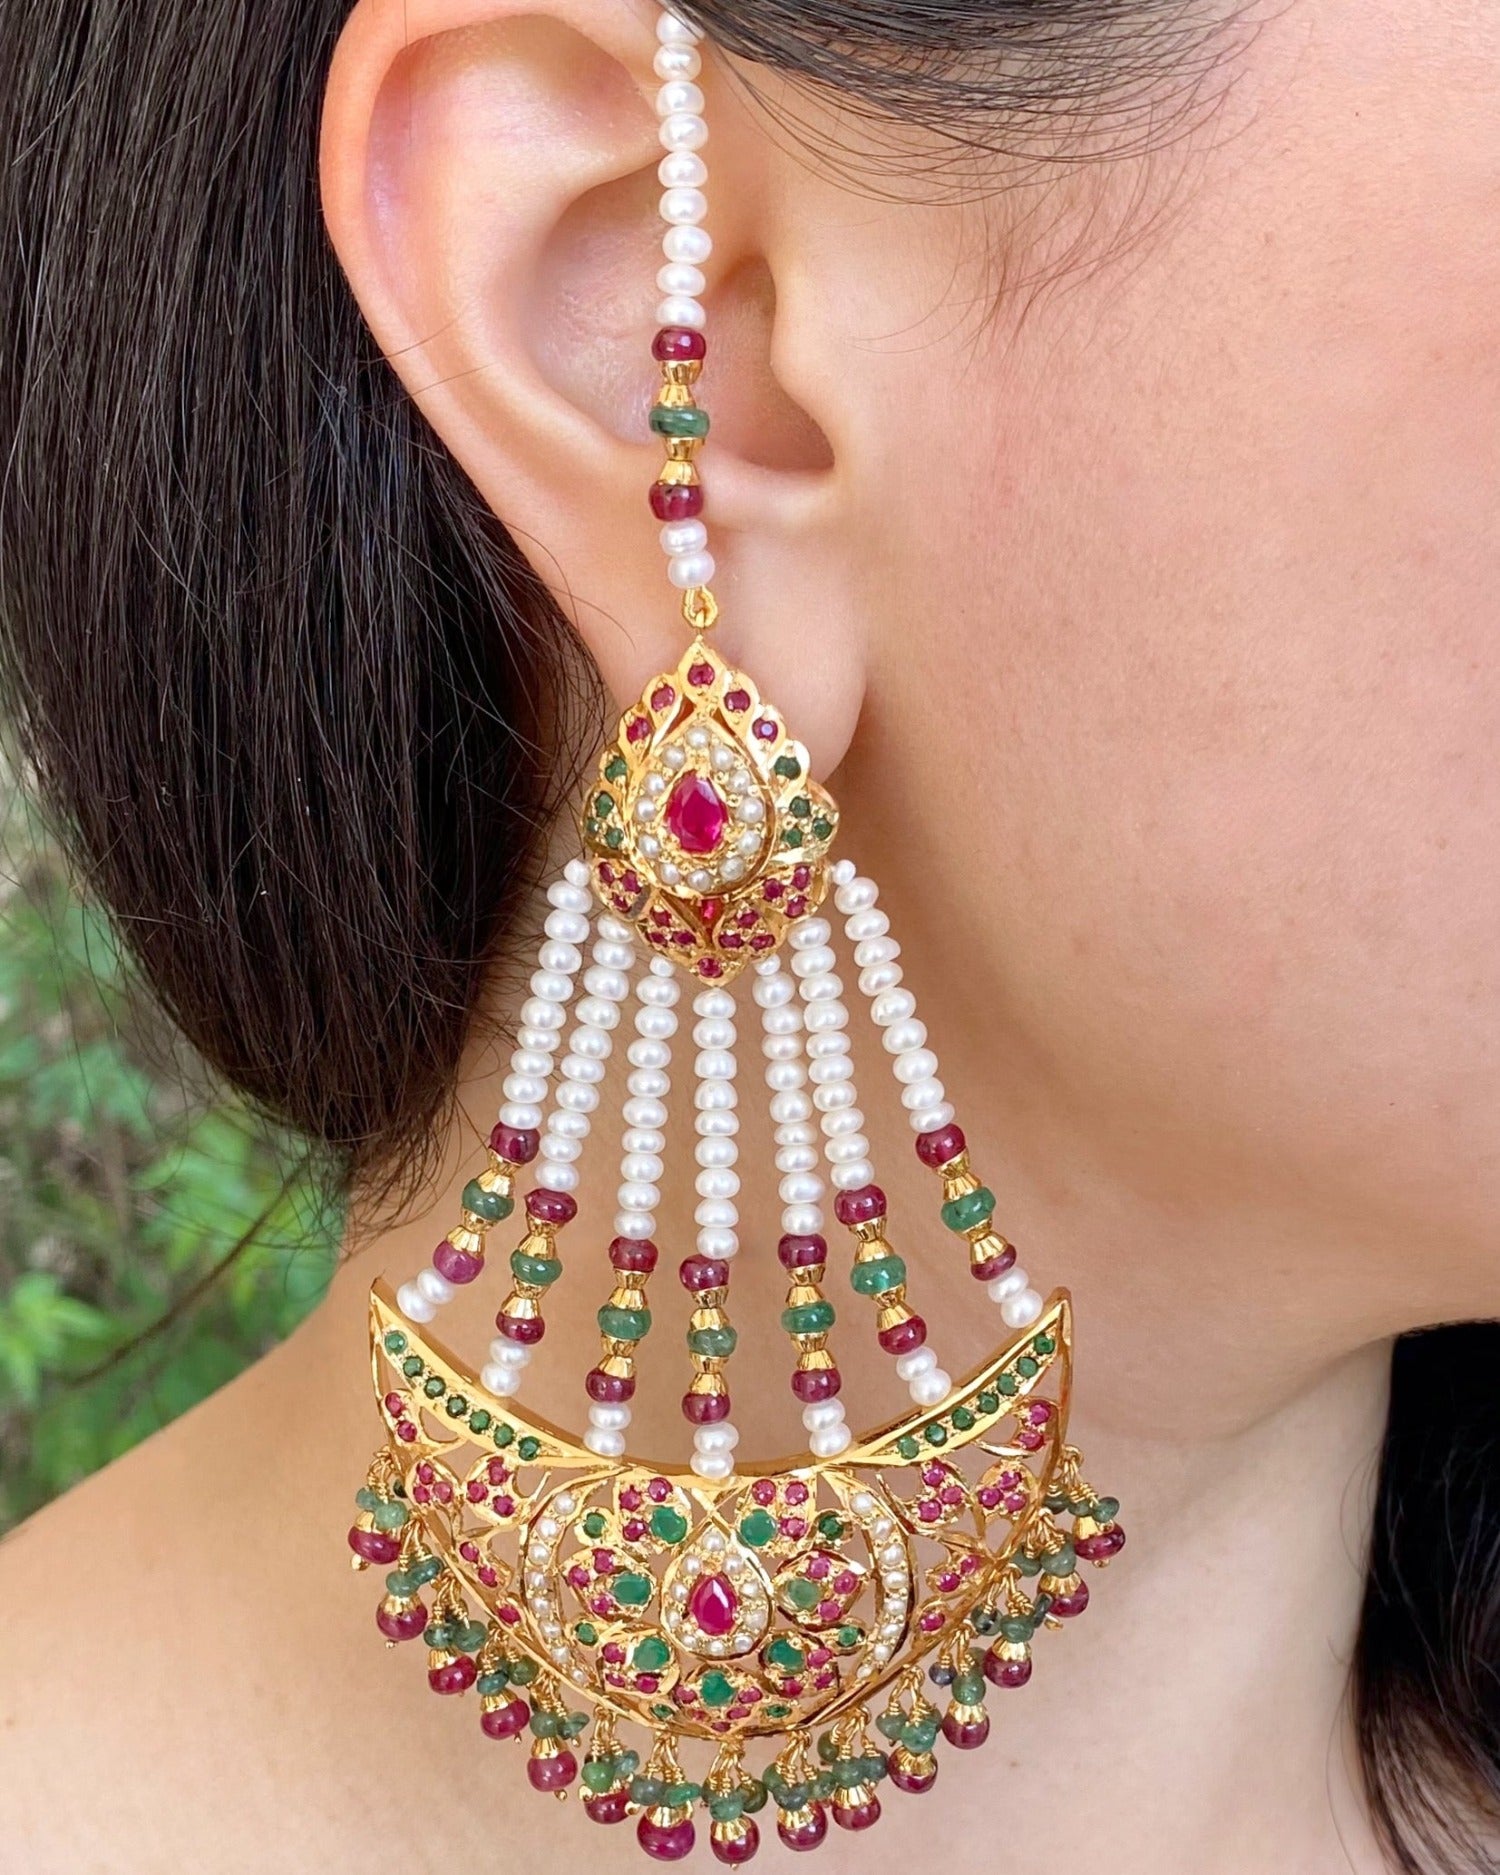 Pakistani earrings